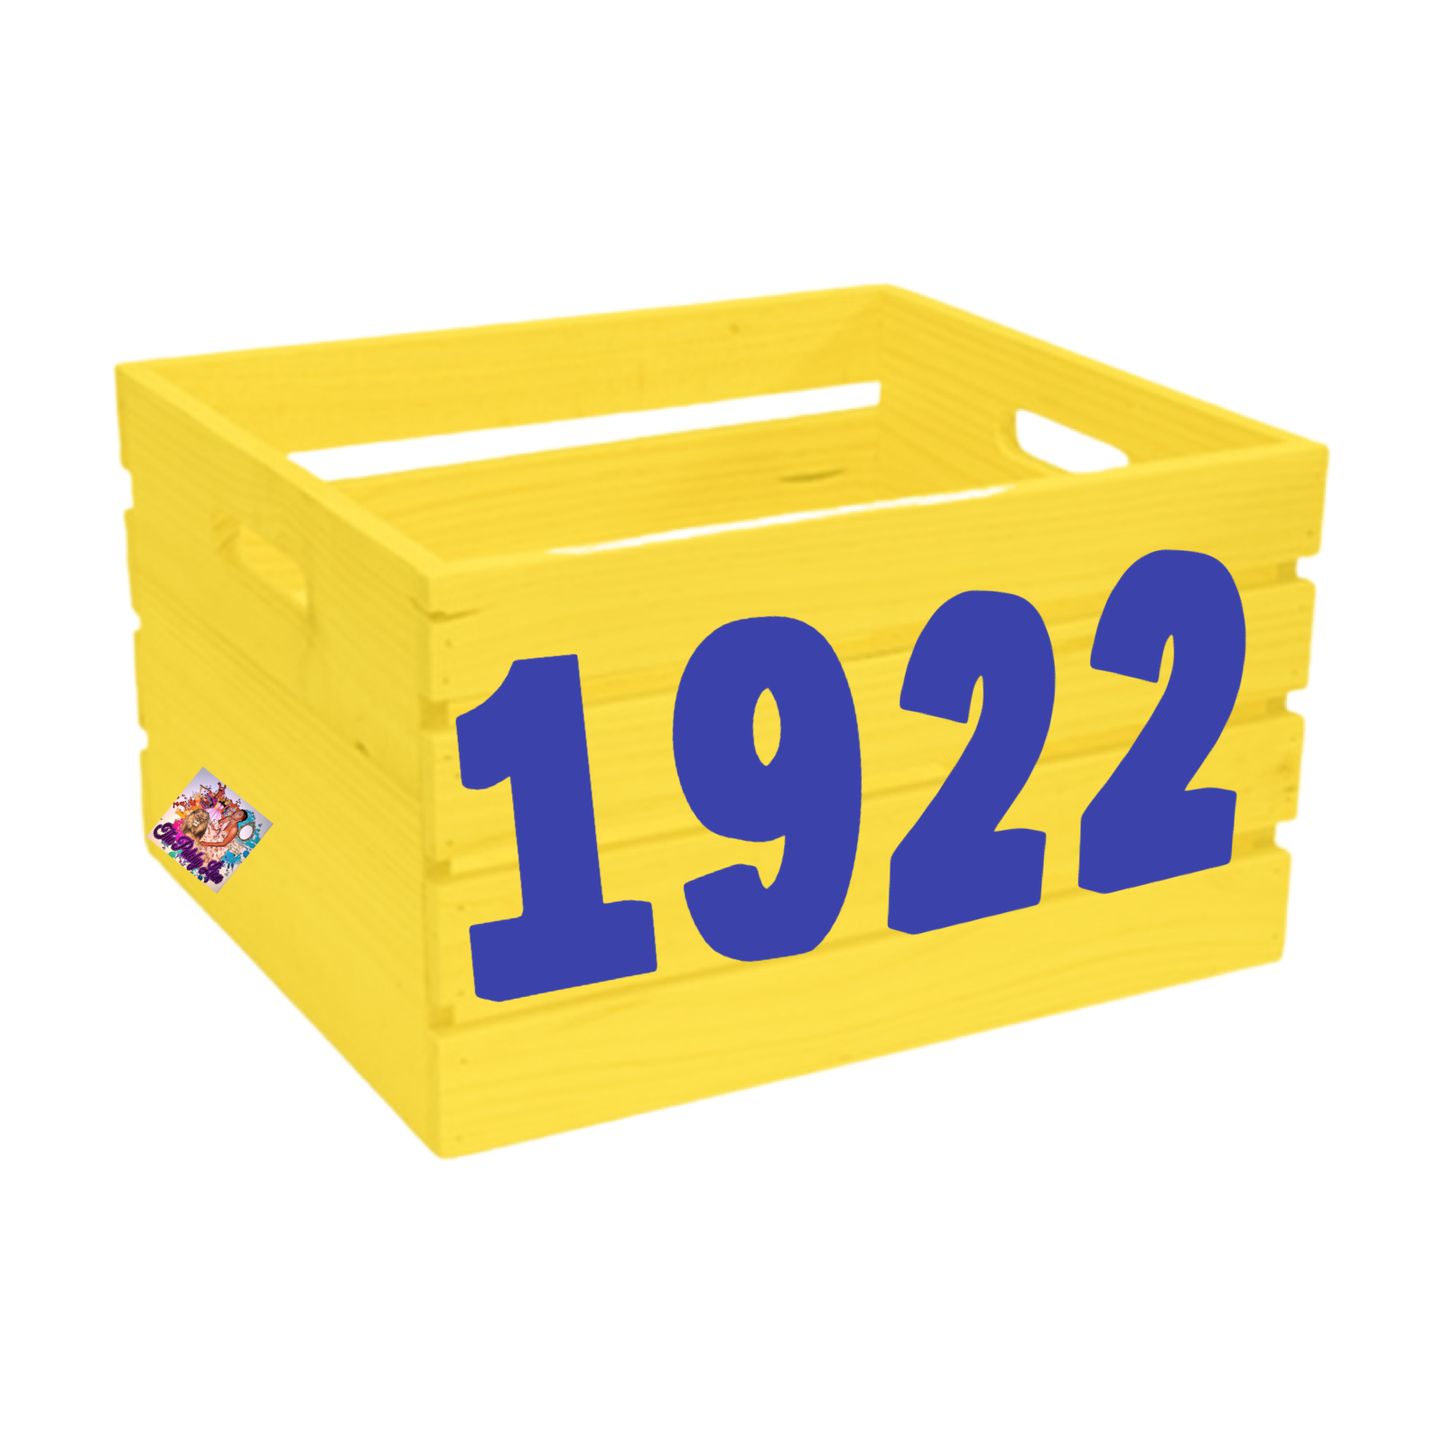 1922 Keepsake Crate | Free Shipping